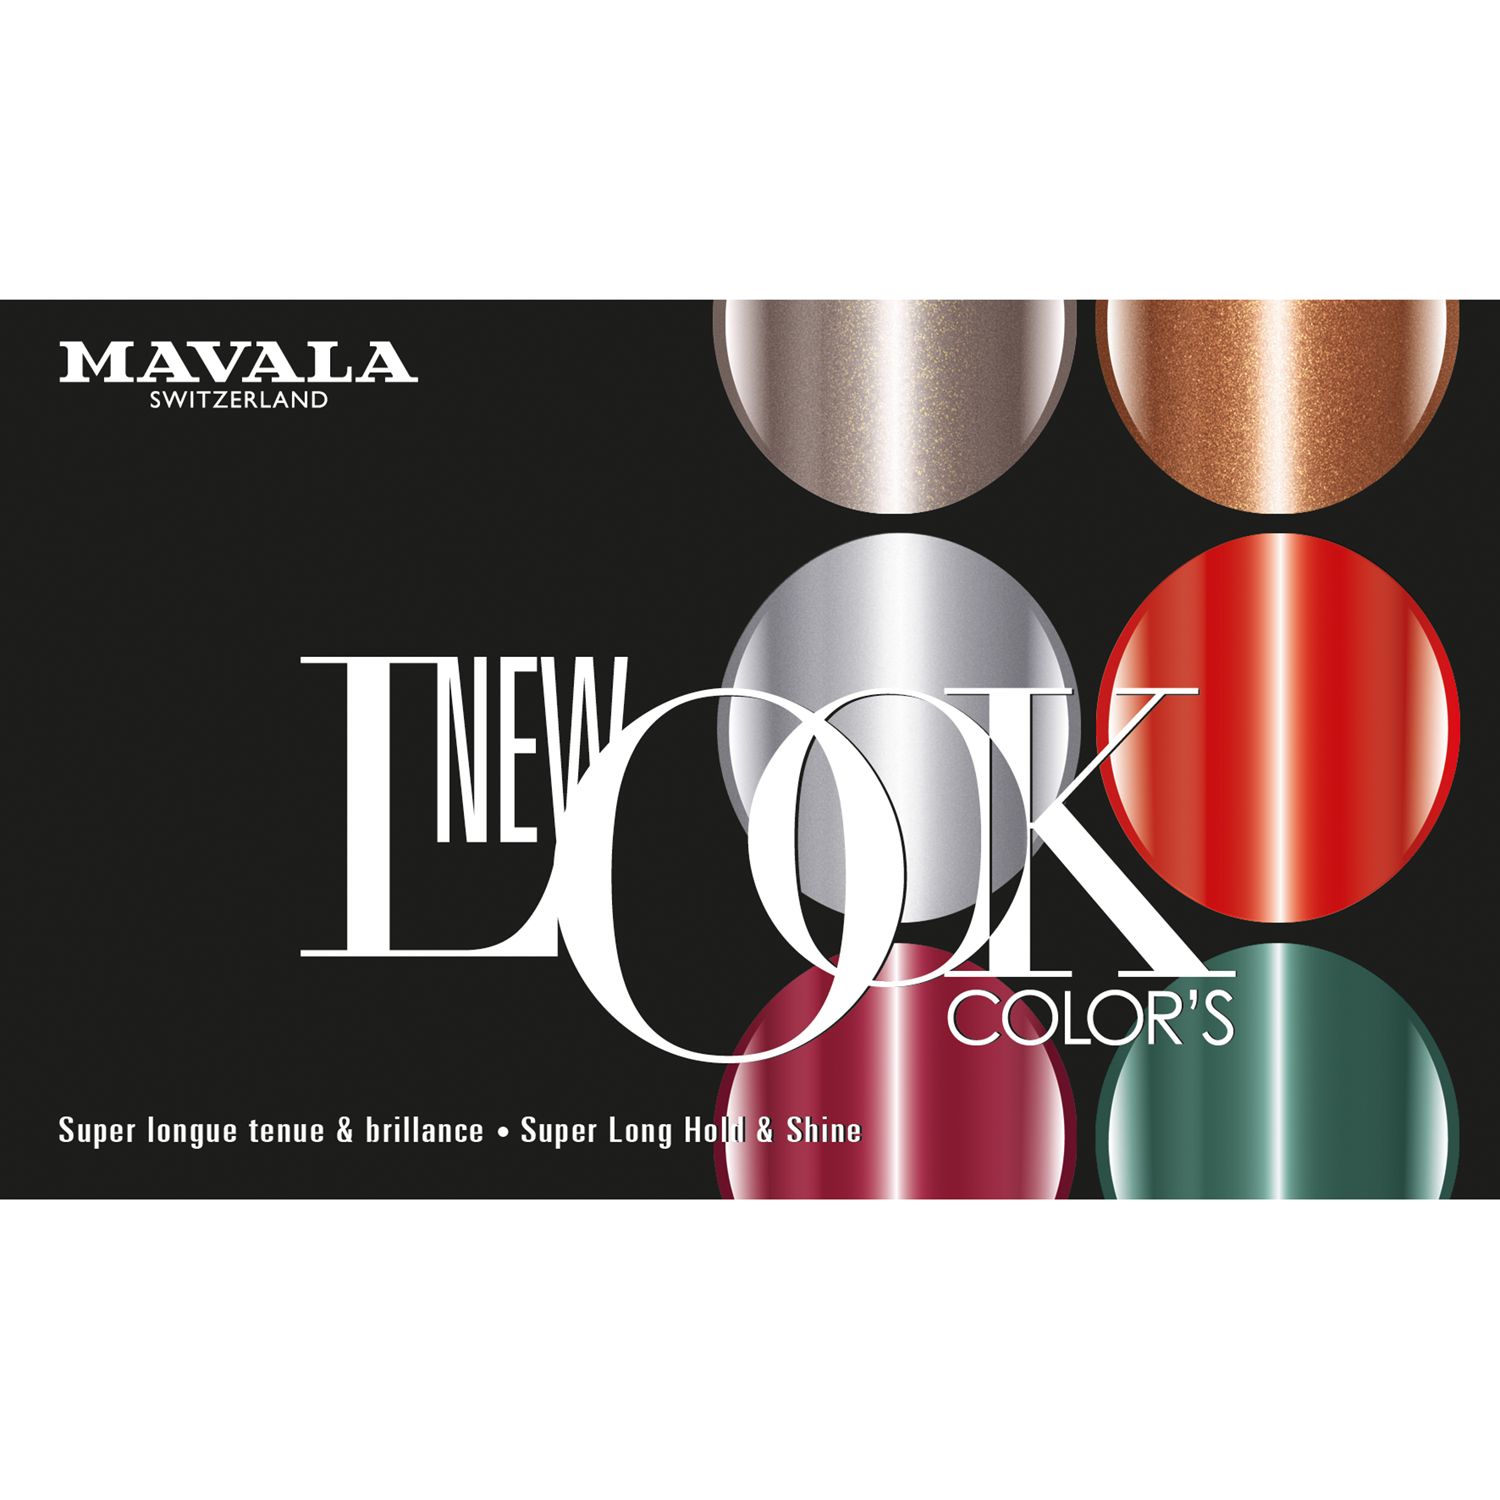 Mavala Nail Colour - New Look Collection, Copenhagen 2